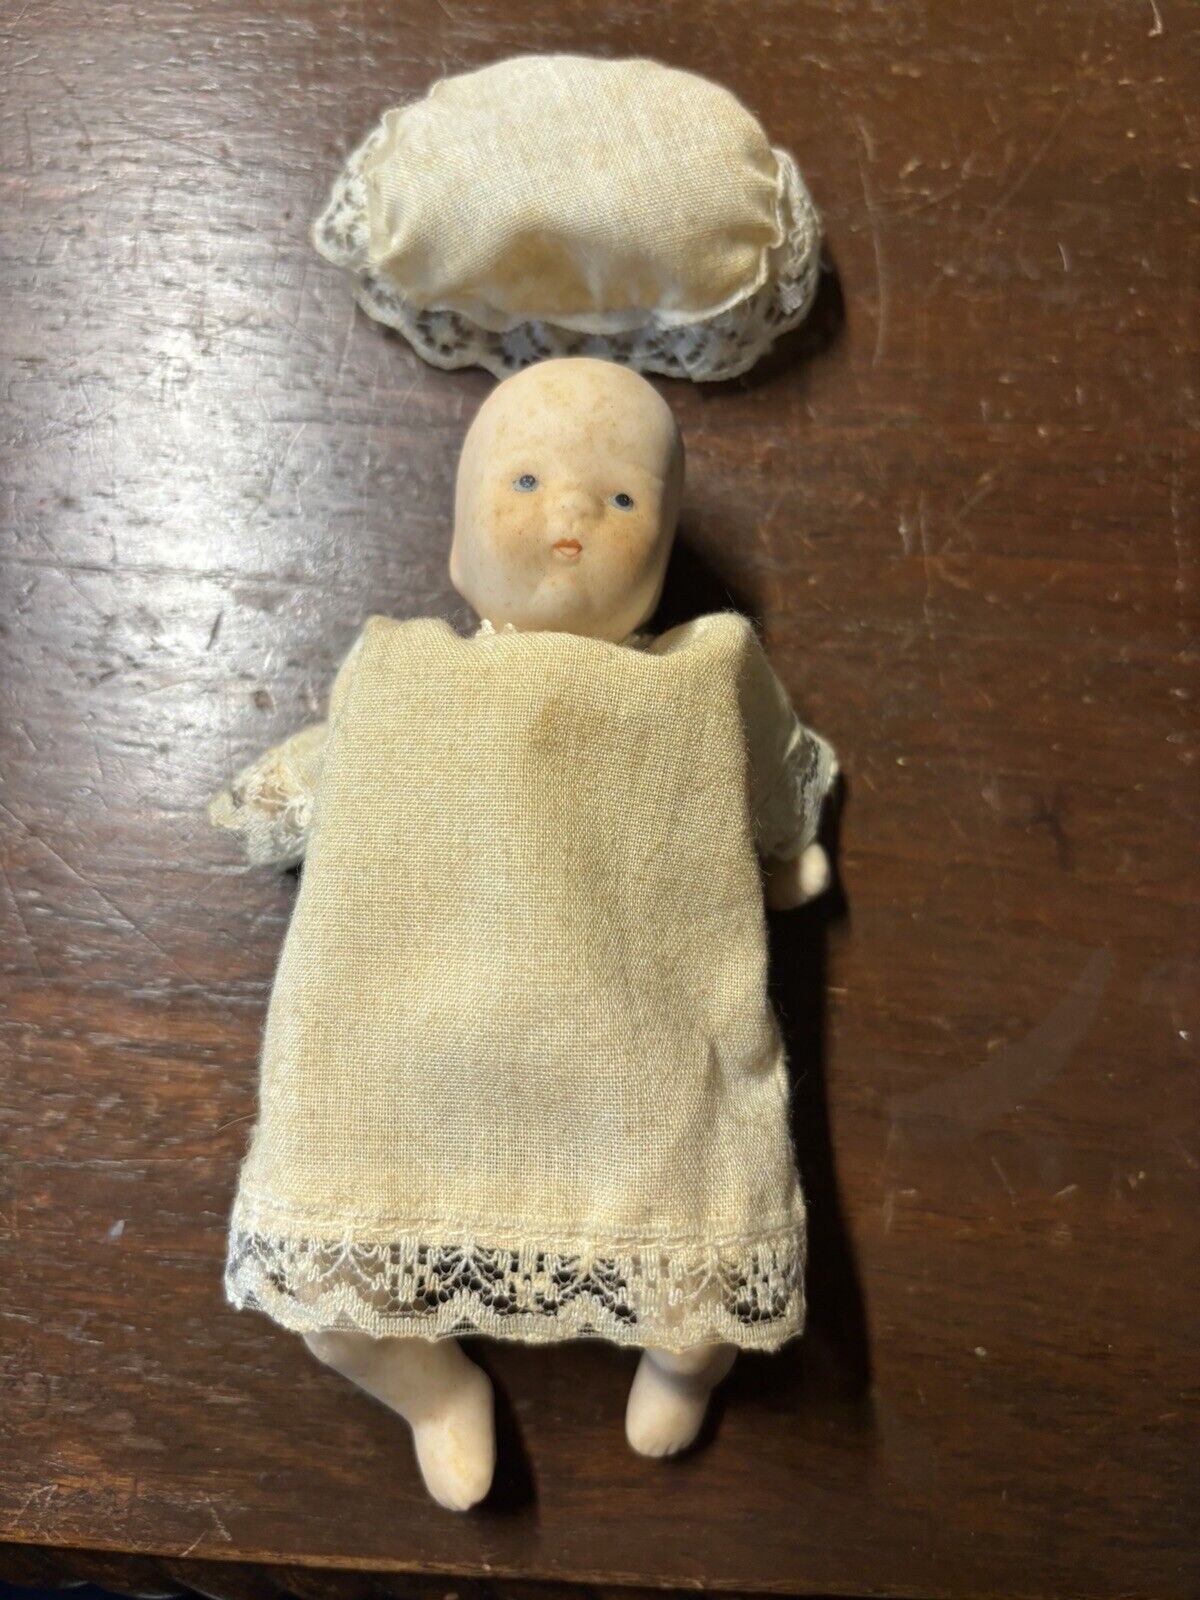 antique victorian porcelain dolls